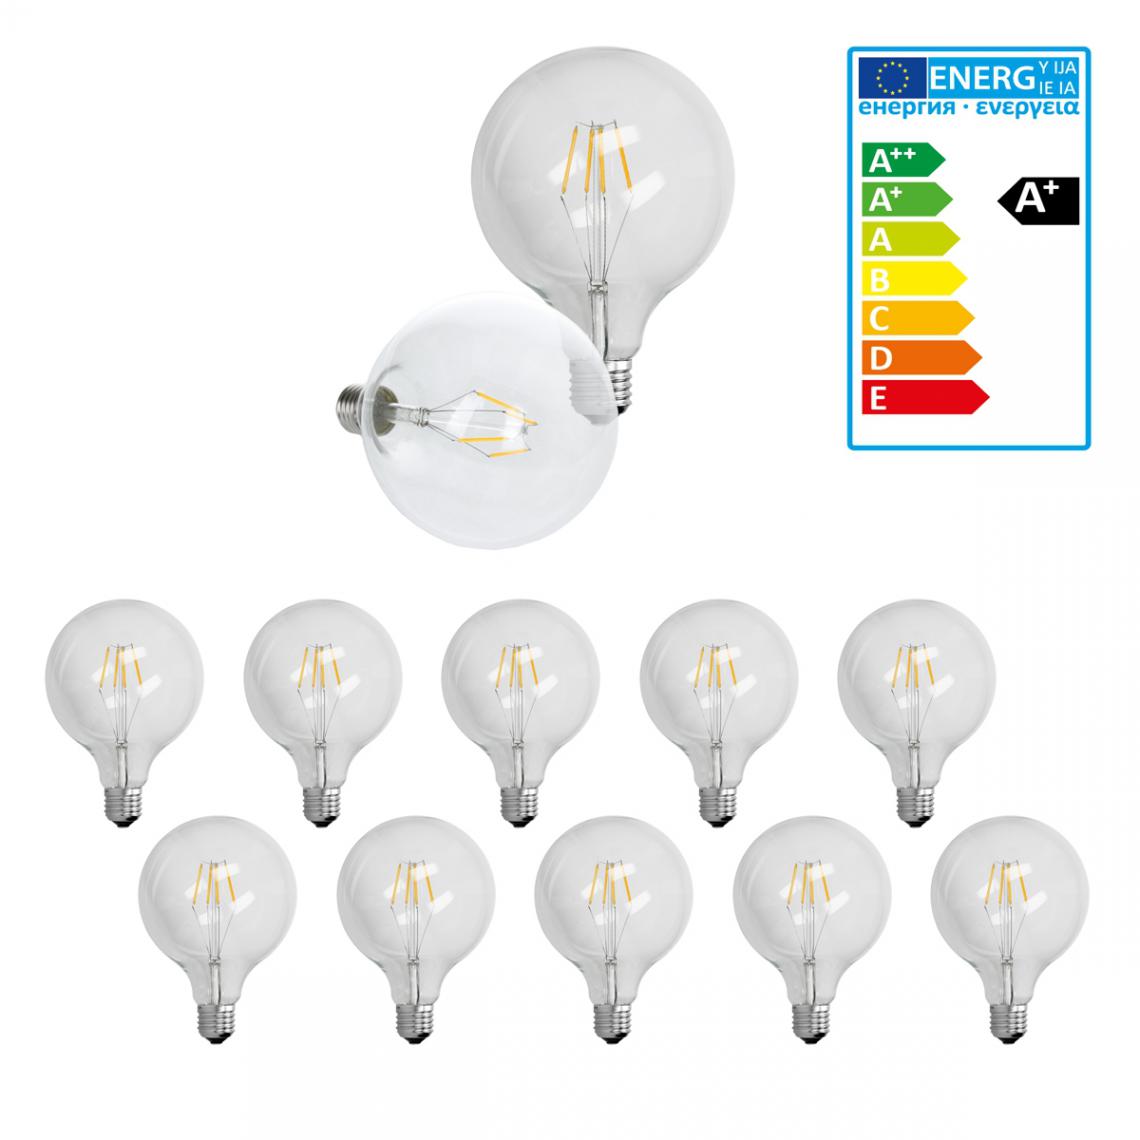 Ecd Germany - 10 x ampoule LED gros filament E27 4W 125 mm blanc chaud - Ampoules LED